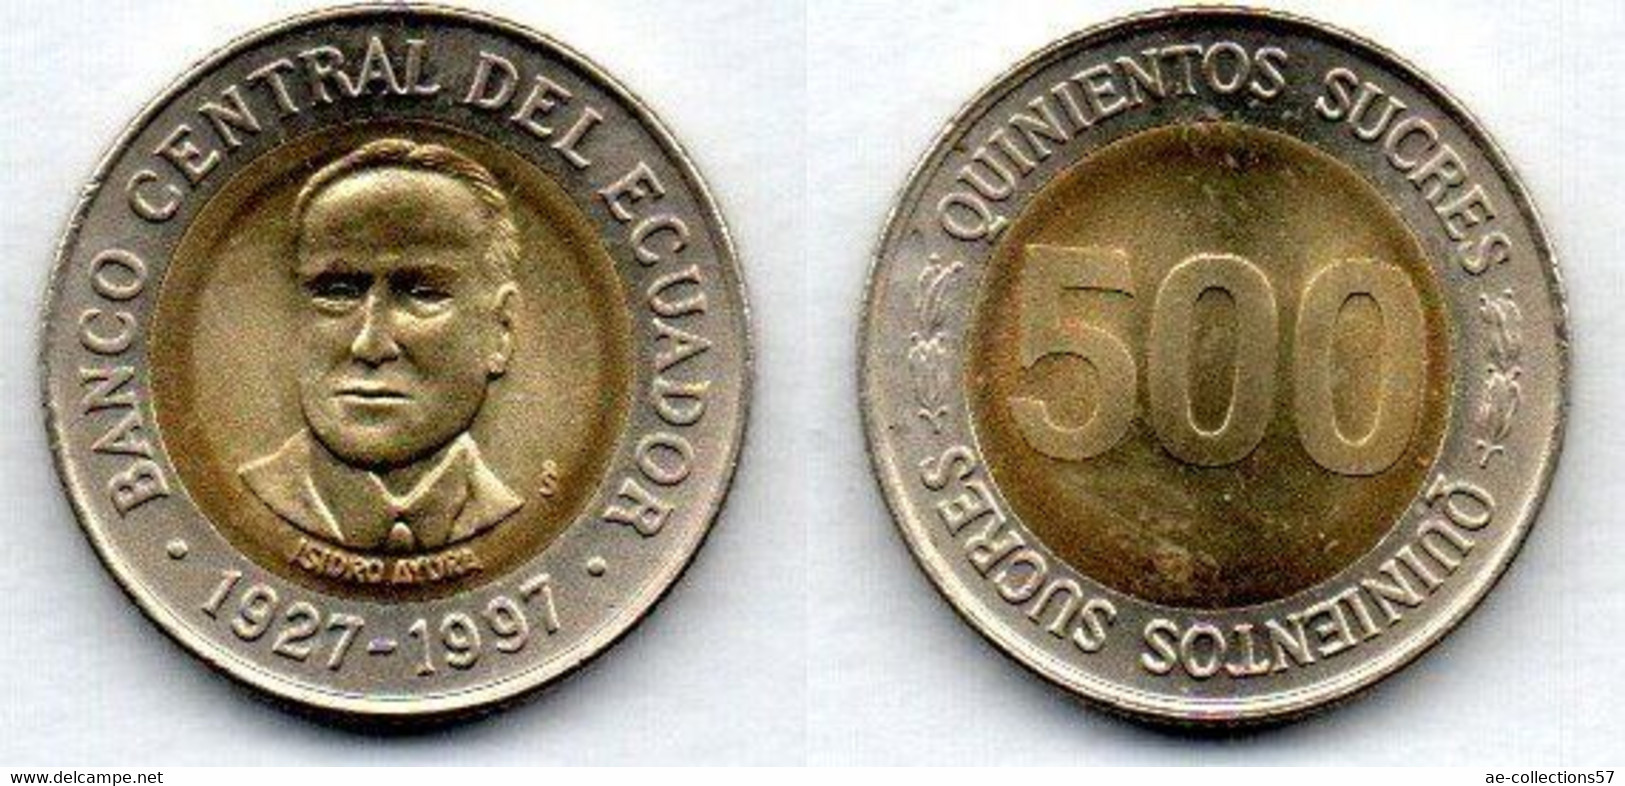 Equateur -  500 Sucres 1997 SPL - Ecuador